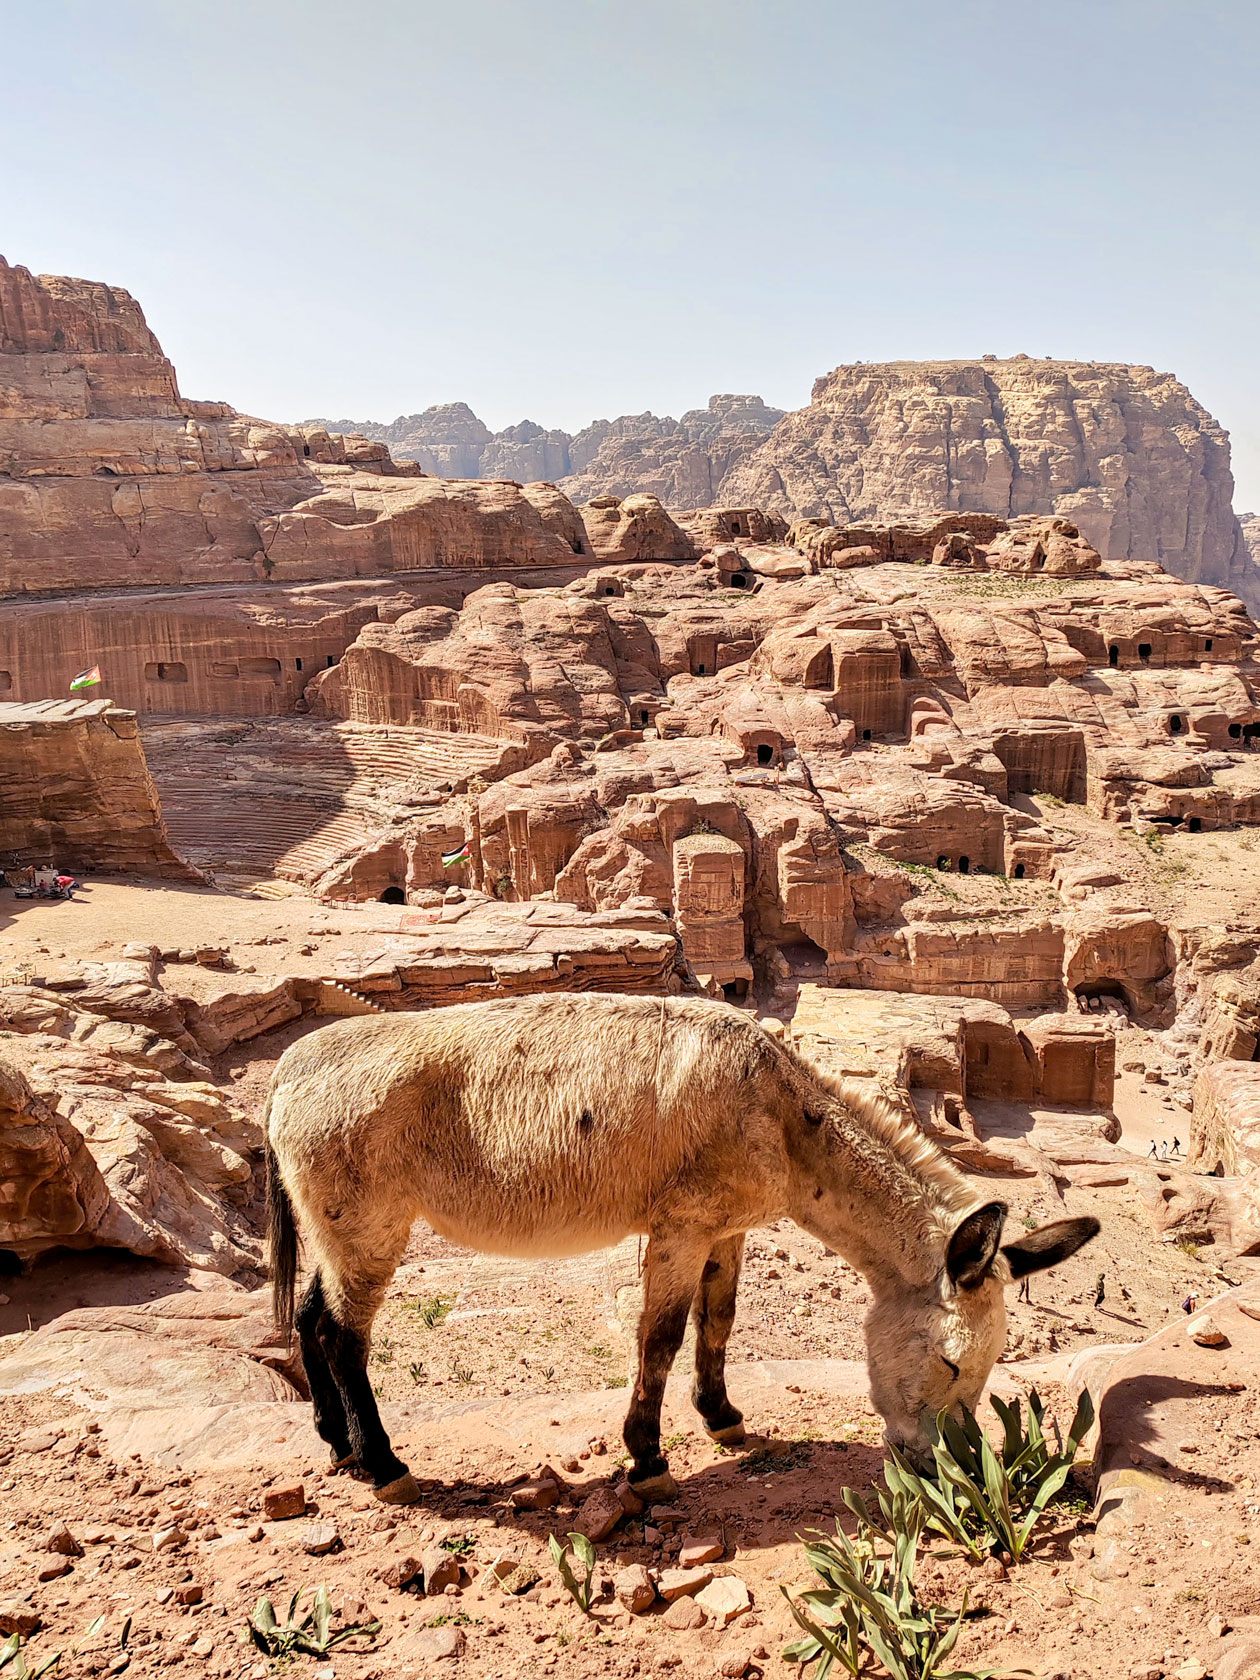 Бедуины предлагают прокатиться на осликах, лошадях и верблюдах. Мне было жалко всех этих животных, и от поездок я отказалась